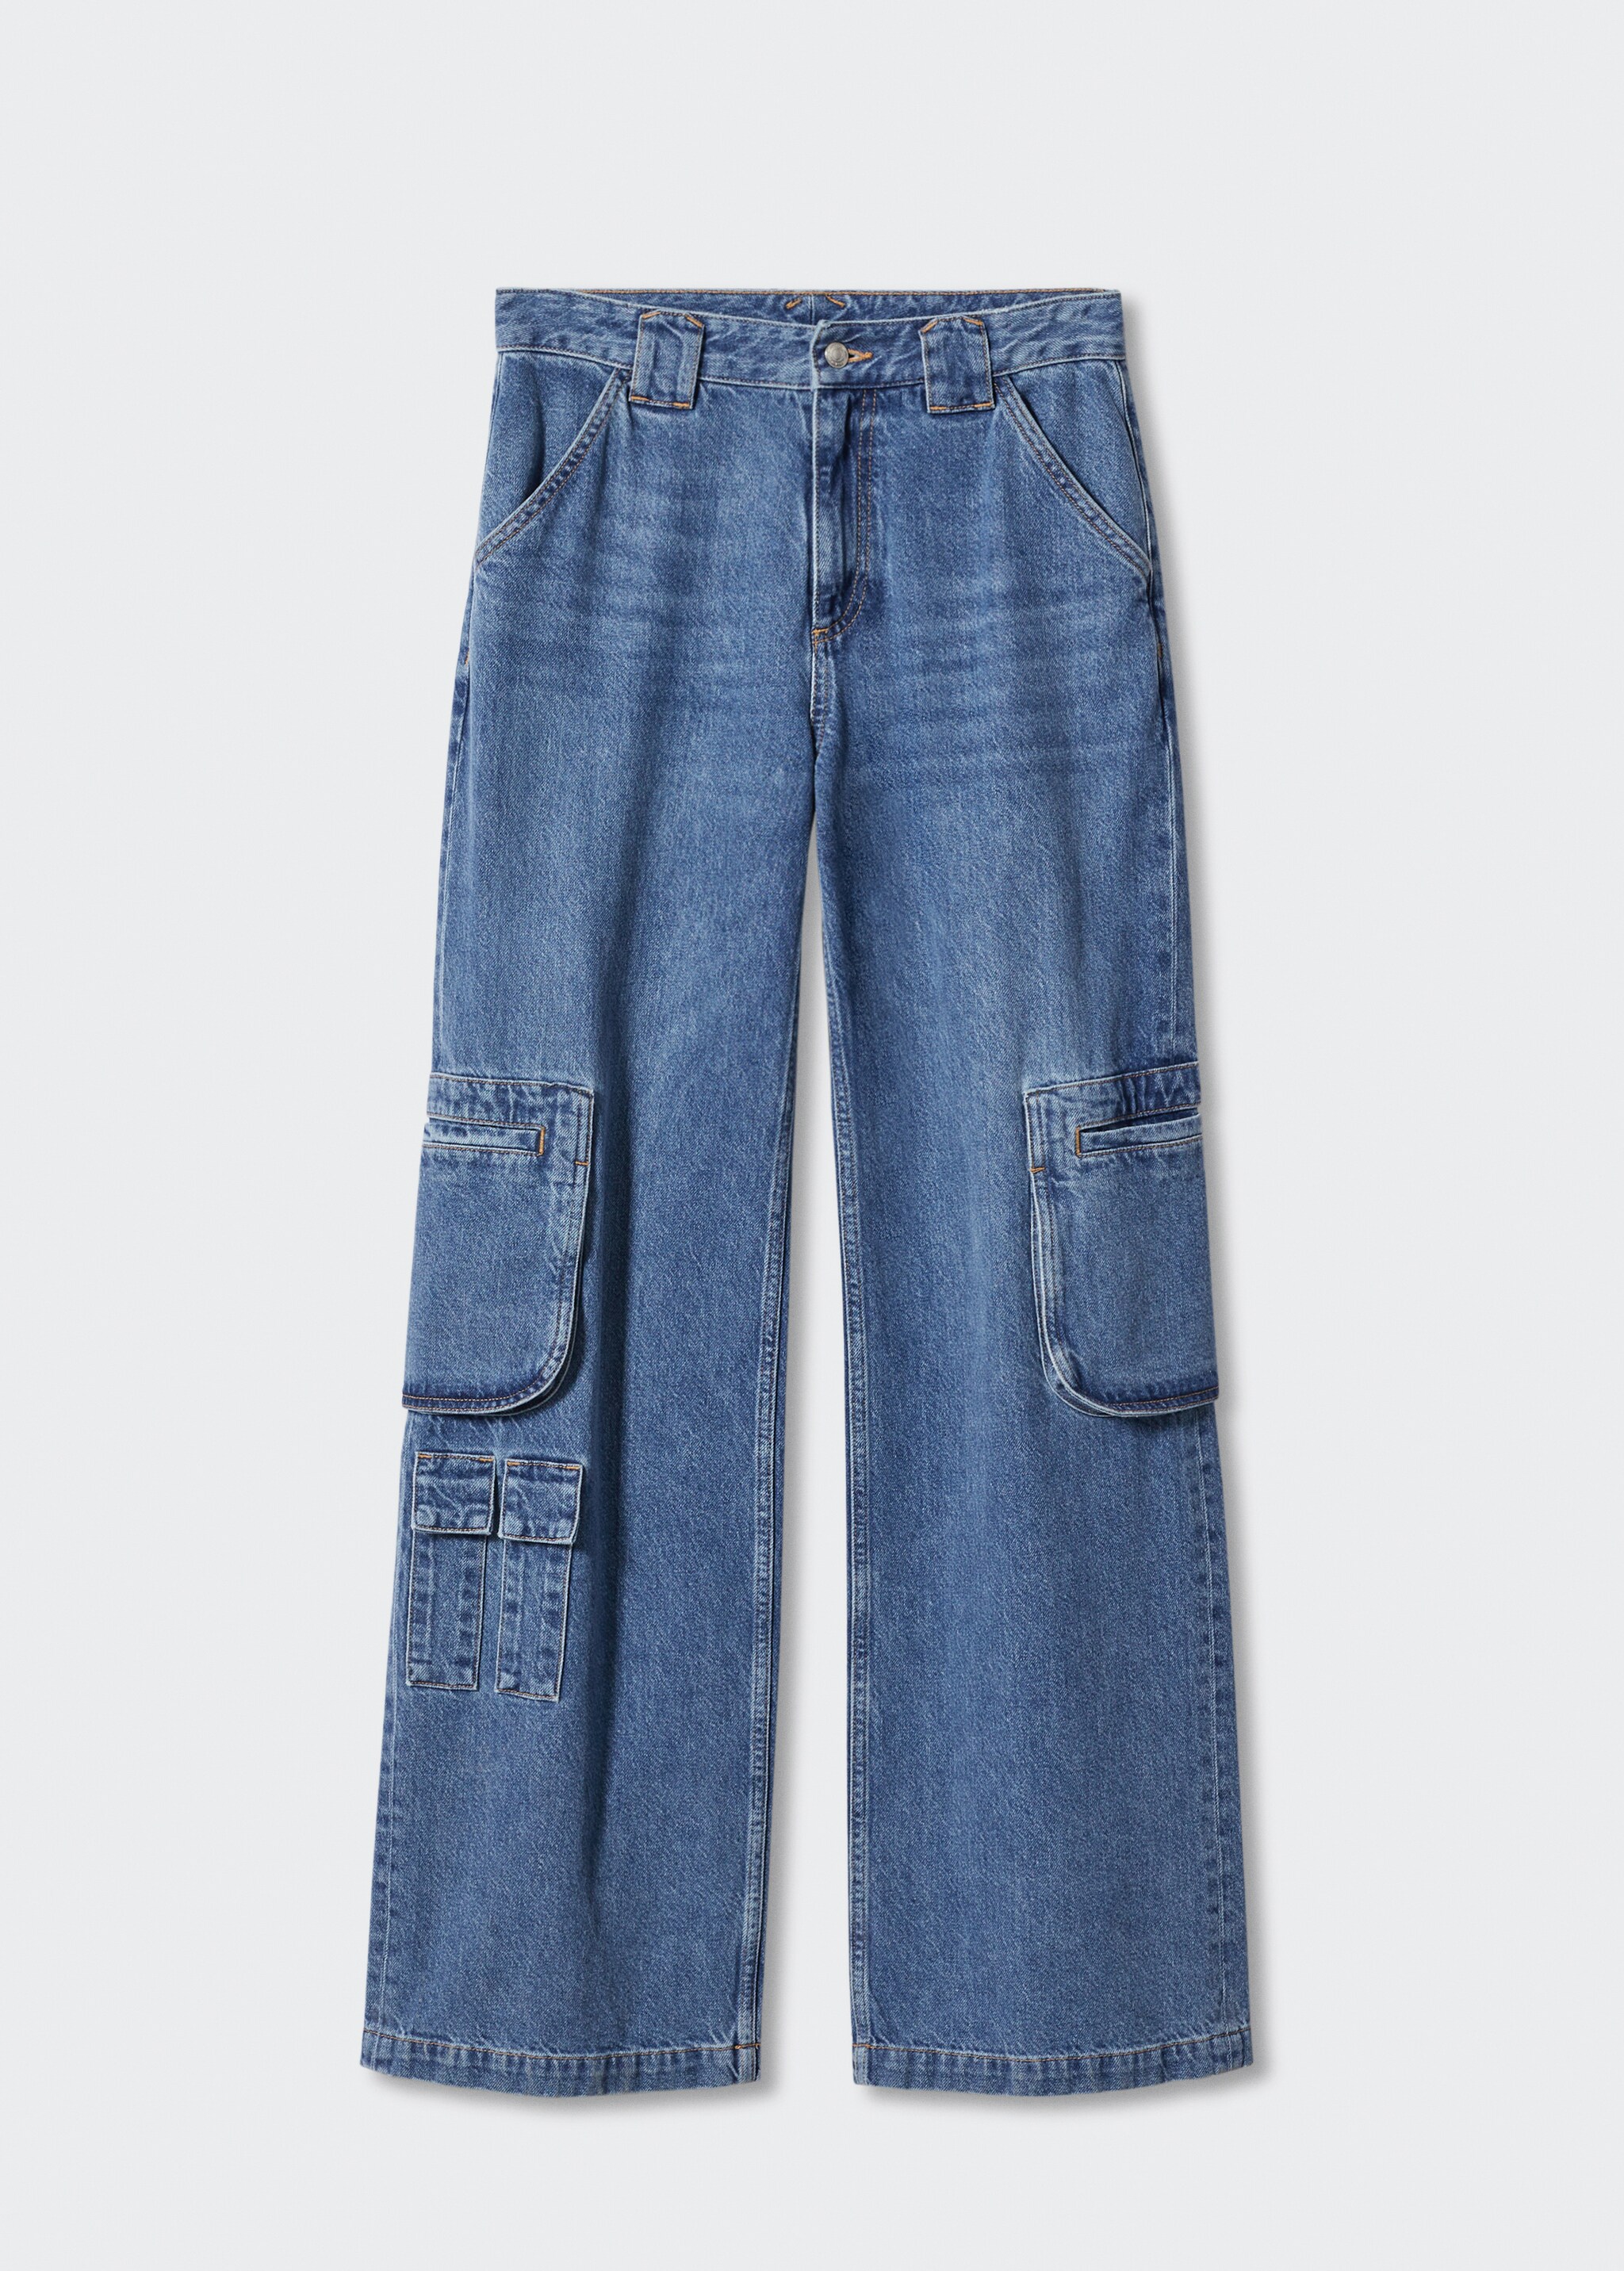 Jeans cargo multibolsillos - Artículo sin modelo